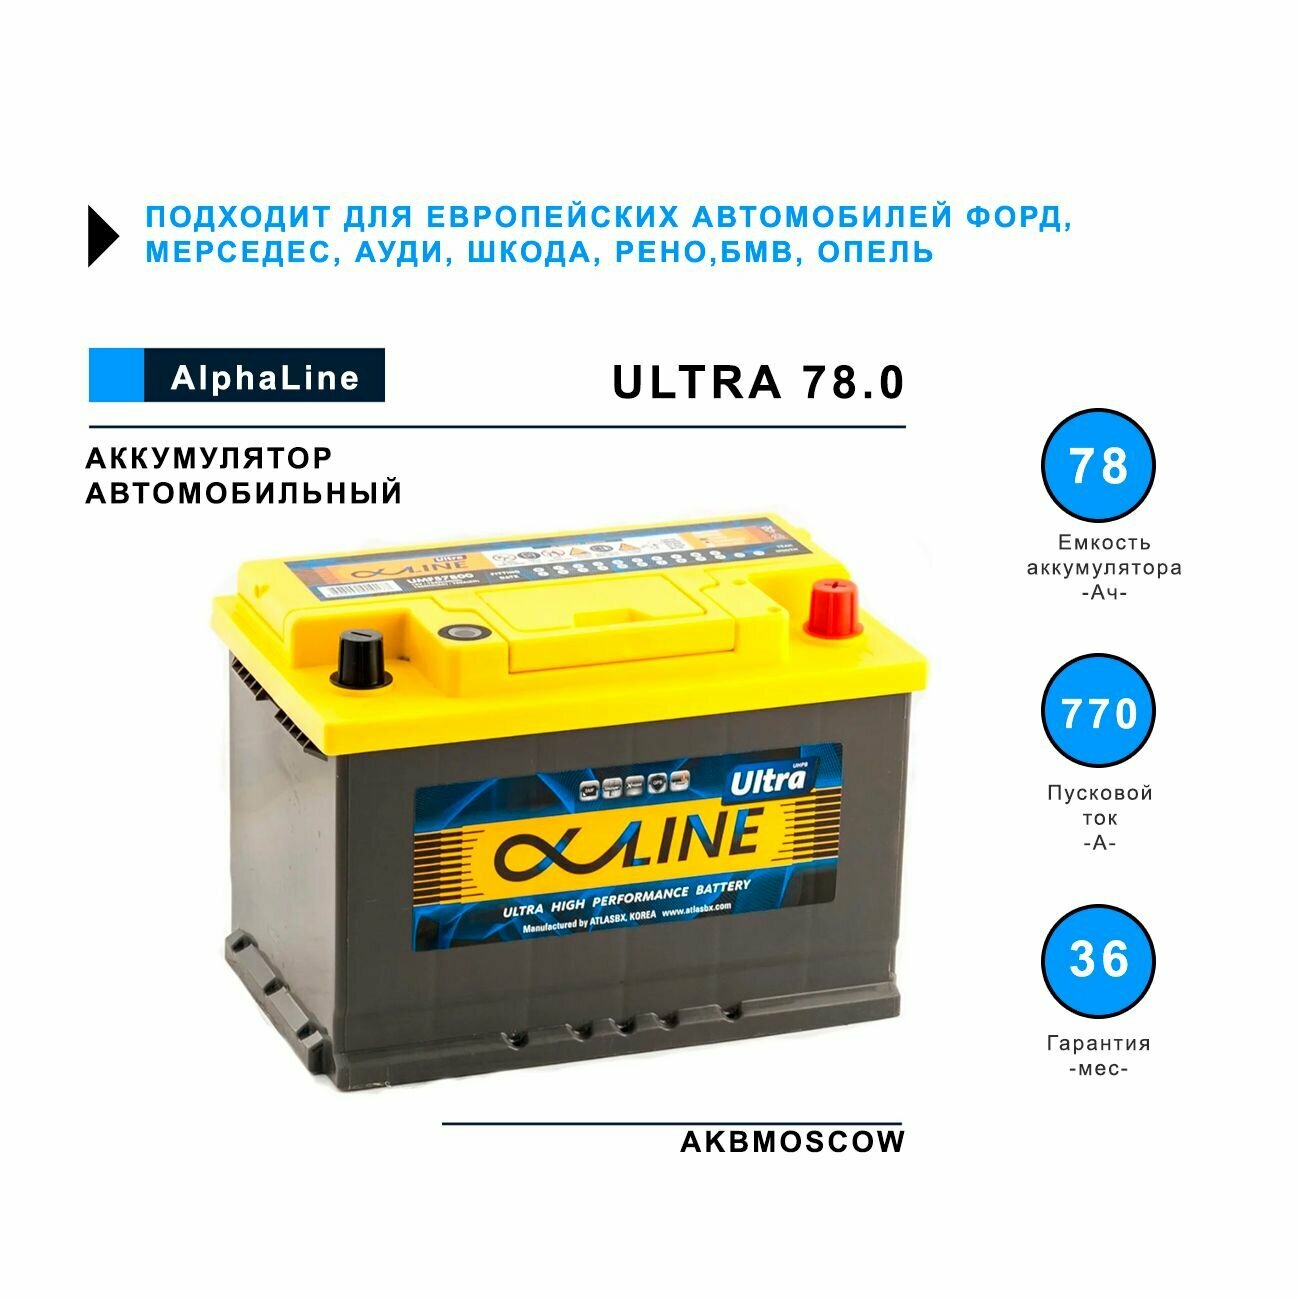 Аккумулятор автомобильный ALPHALINE ULTRA 78.0 L3 (57800) 278/175/190 обратная полярность 78Ач 780А